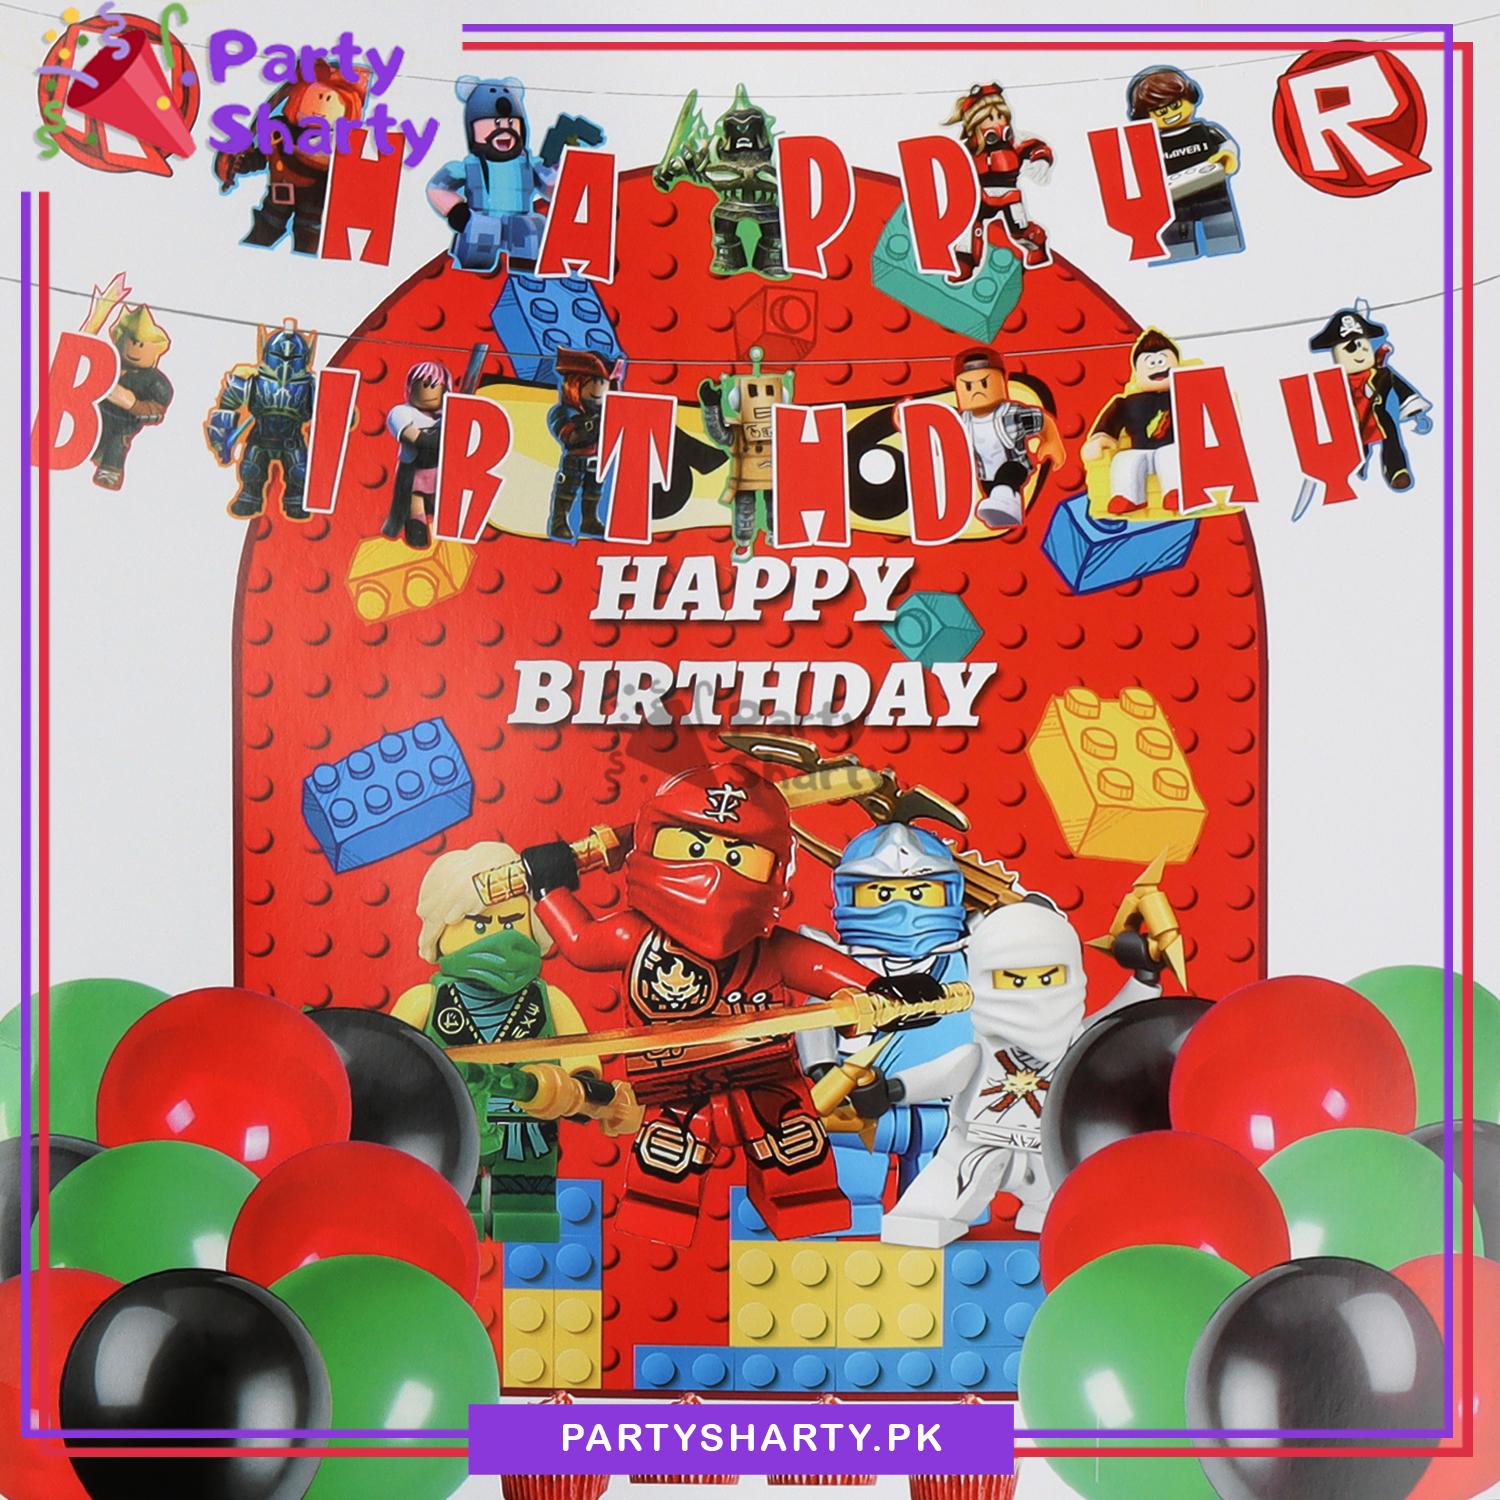 Happy Birthday LEGO Theme Set For Theme Based Birthday Decoration & Celebration